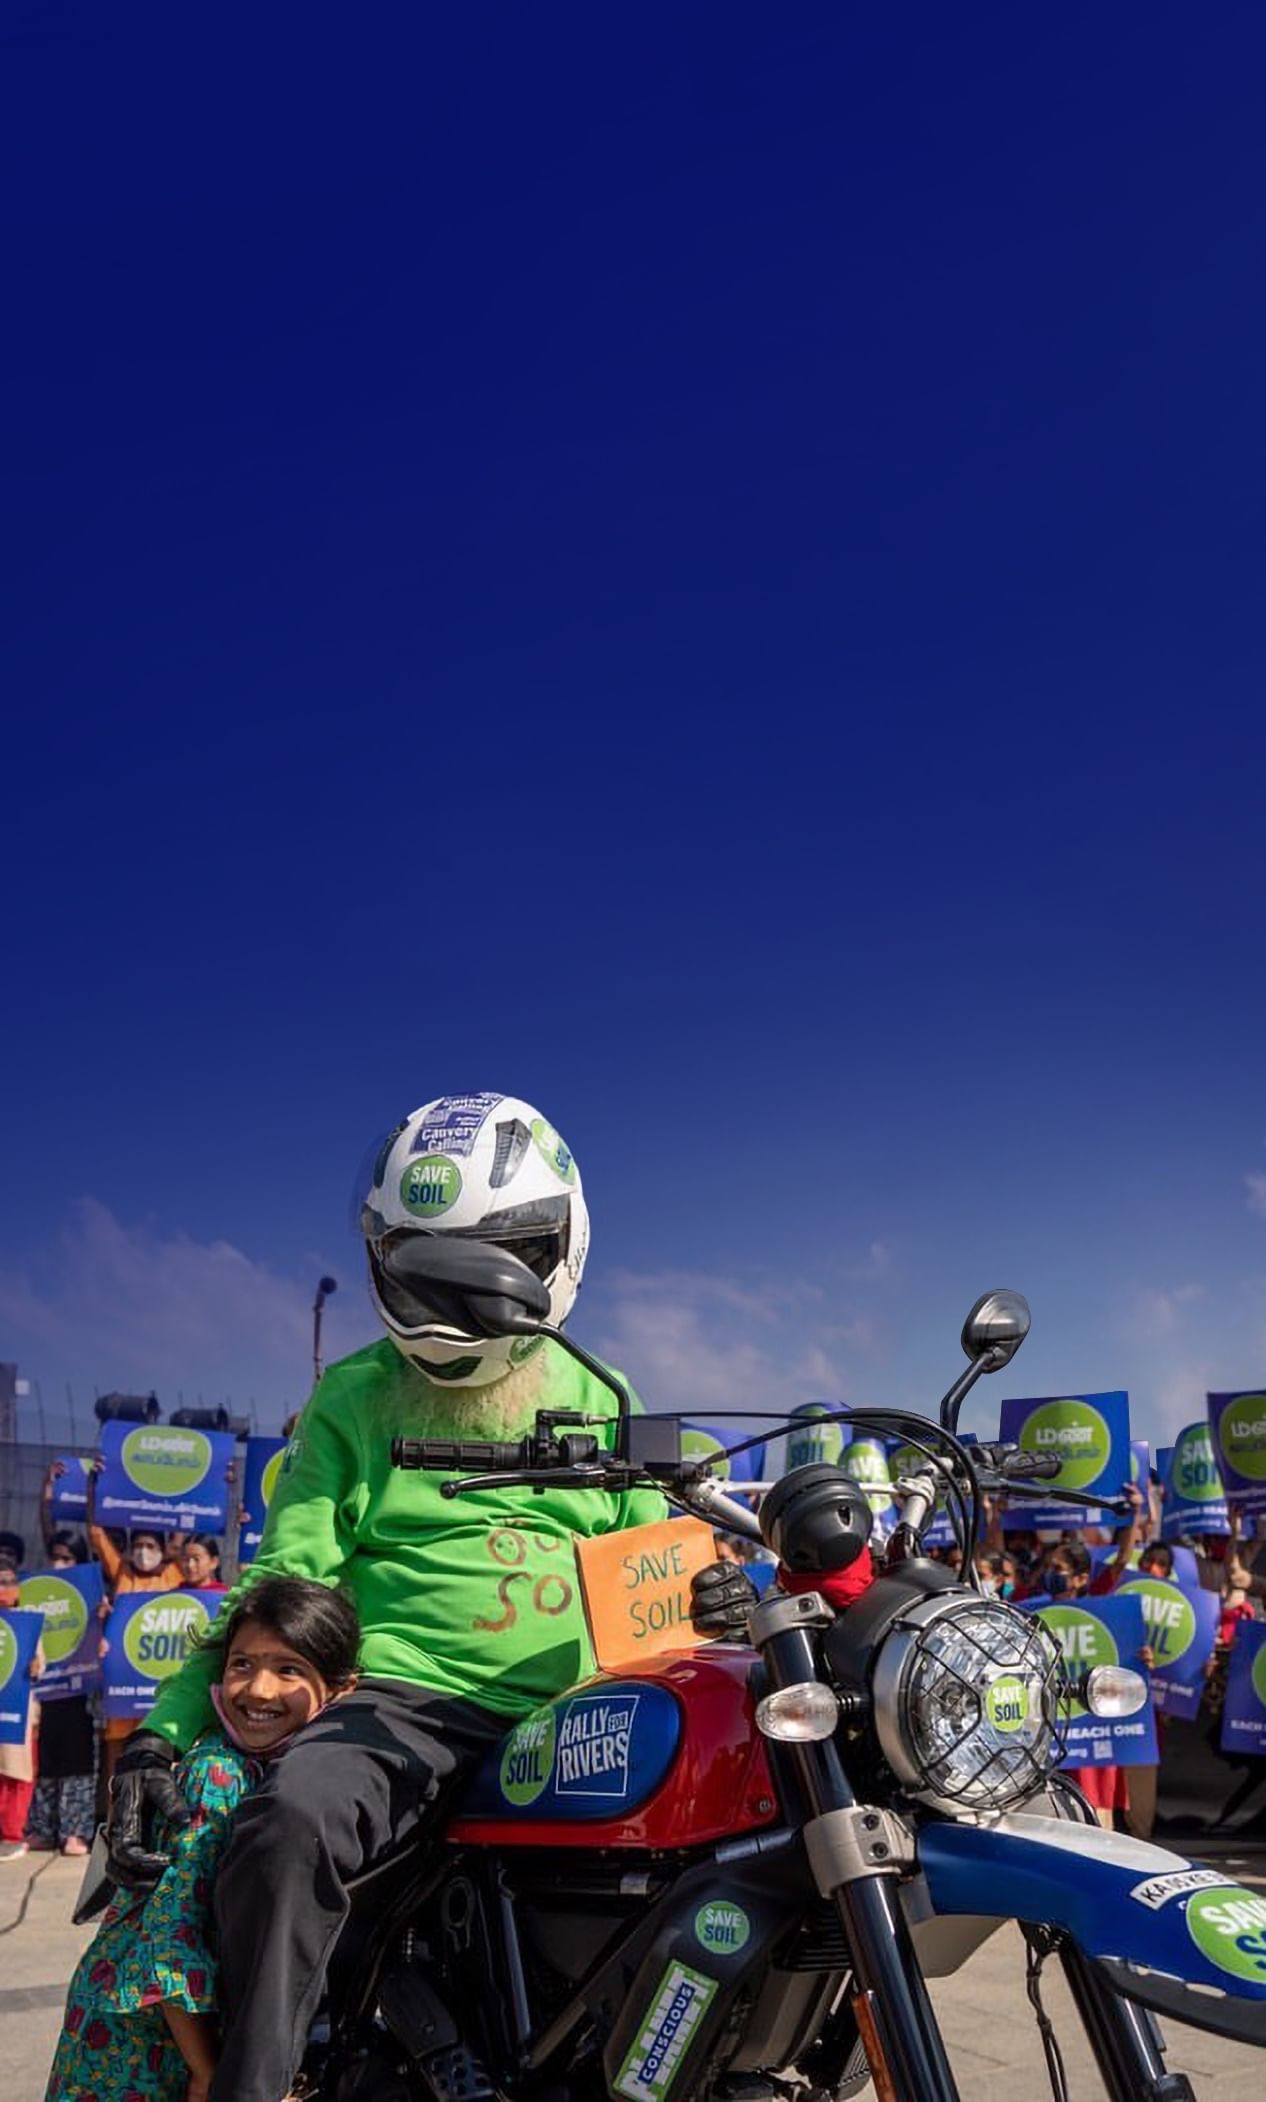 Sadhguru de moto com o cartaz Salve o Solo, junto a uma criança